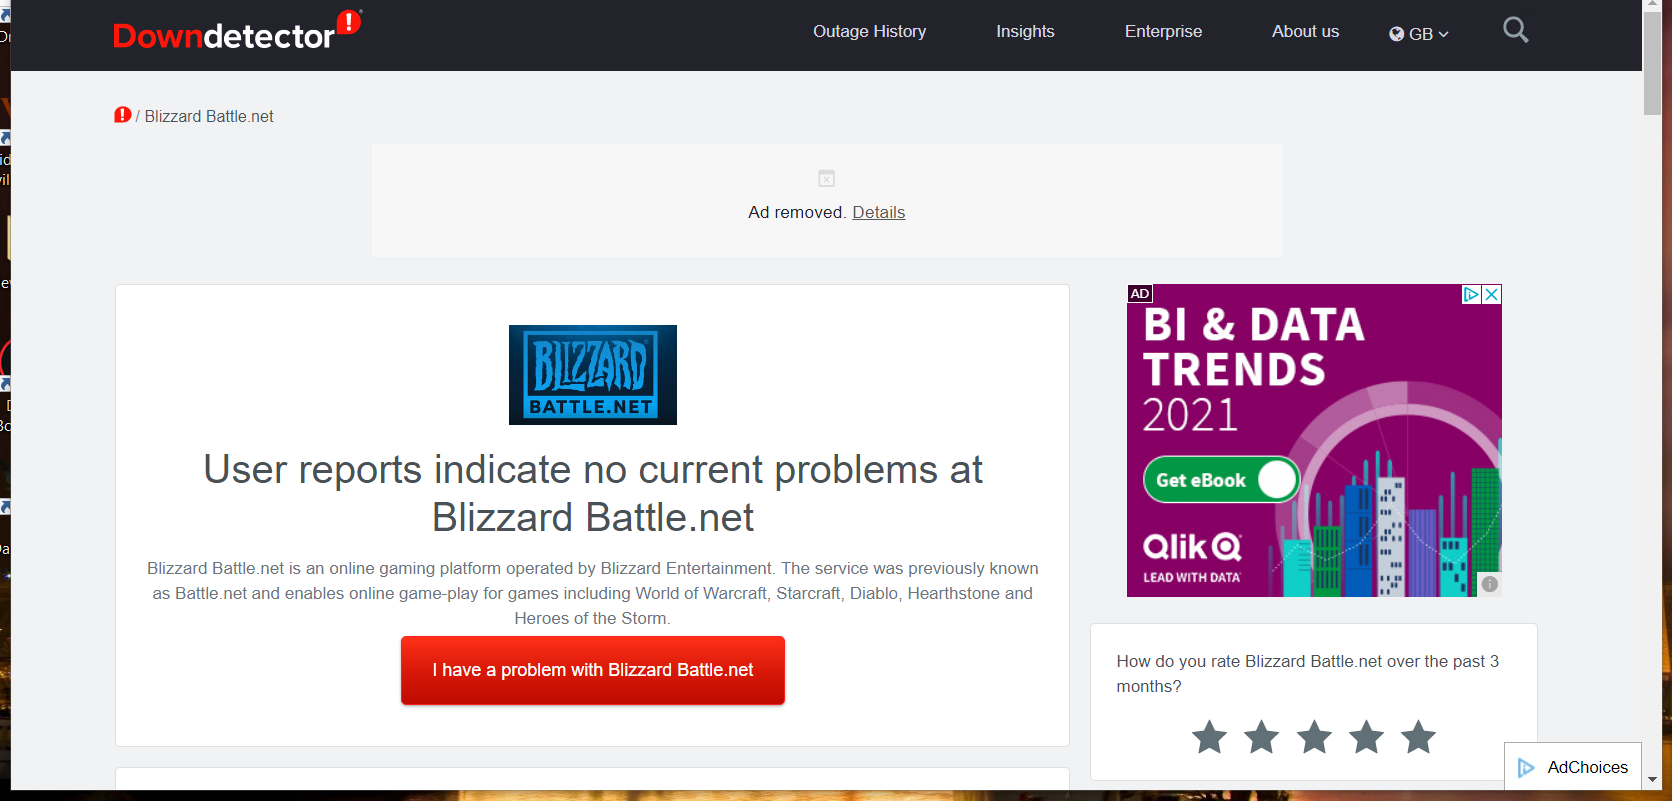 Blizzard-Fehlercode 2 der Downdetektor-Website